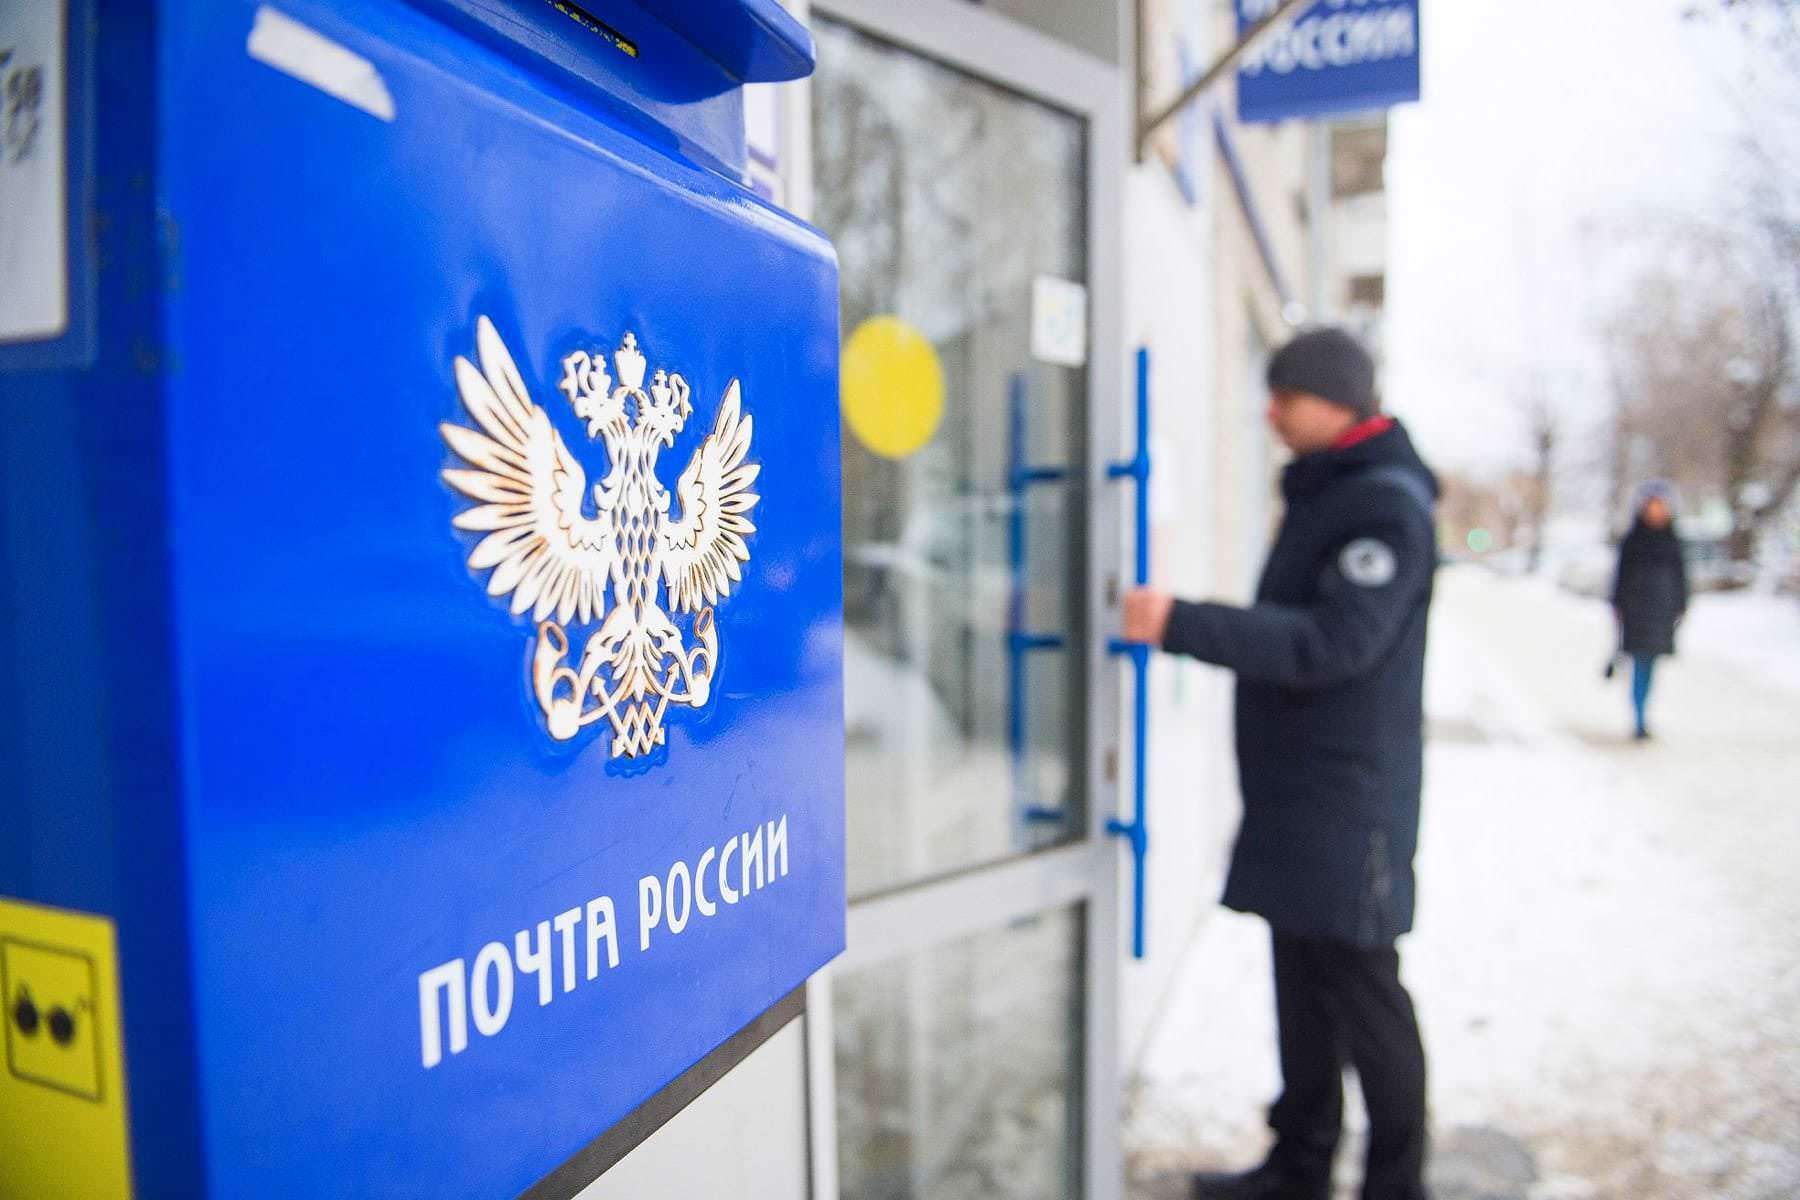 Данные клиентов «Почты России» выложили в интернет. Получатели посылок в бешенстве